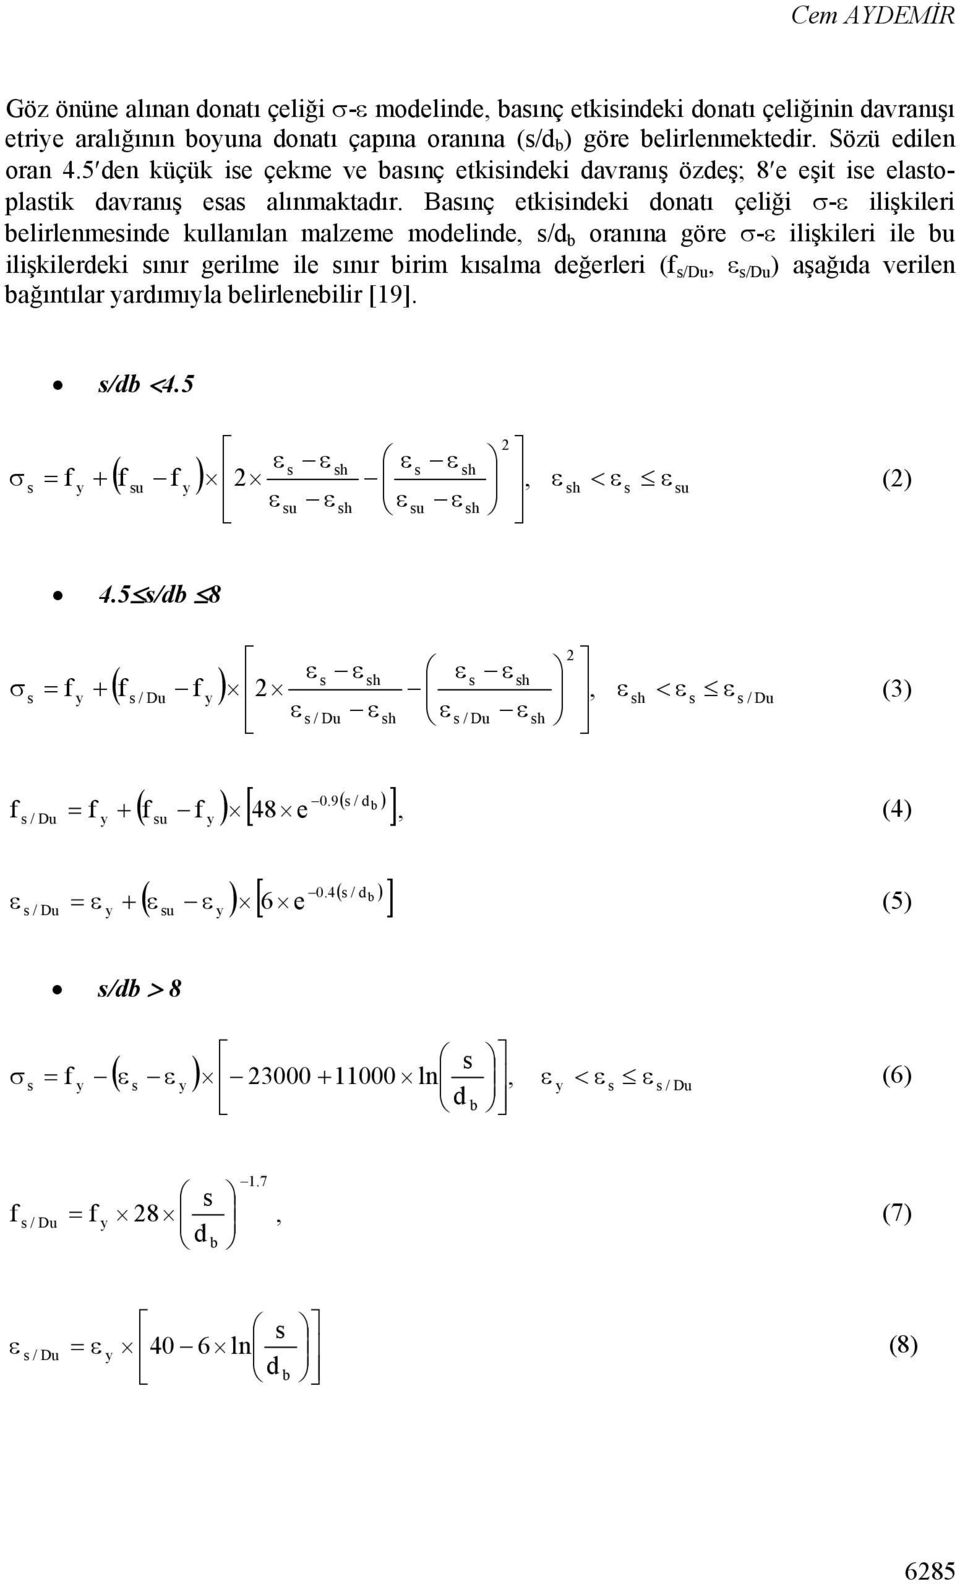 Basınç etkisindeki donatı çeliği - ilişkileri belirlenmesinde kullanılan malzeme modelinde, s/d b oranına göre - ilişkileri ile bu ilişkilerdeki sınır gerilme ile sınır birim kısalma değerleri (f